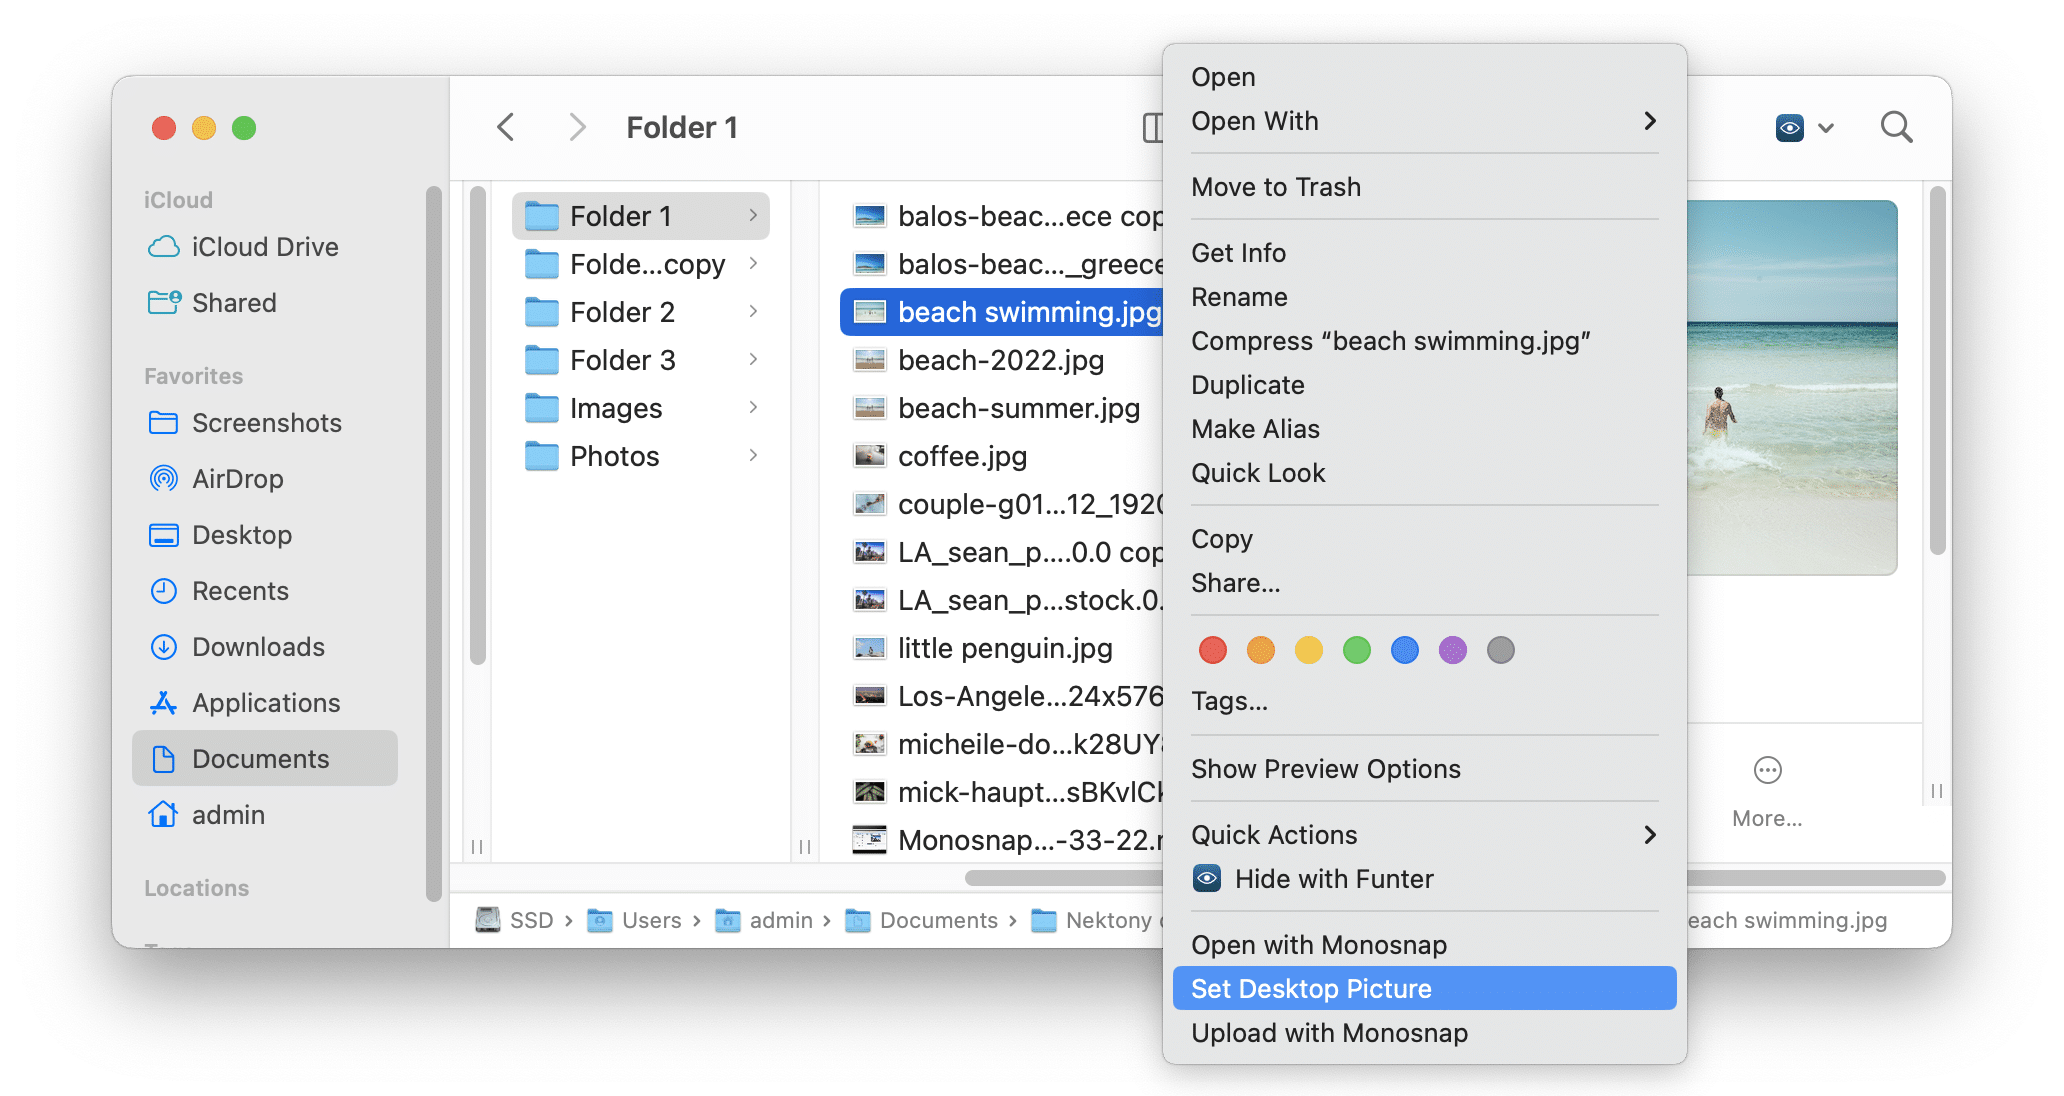 context menu - set desktop picture option